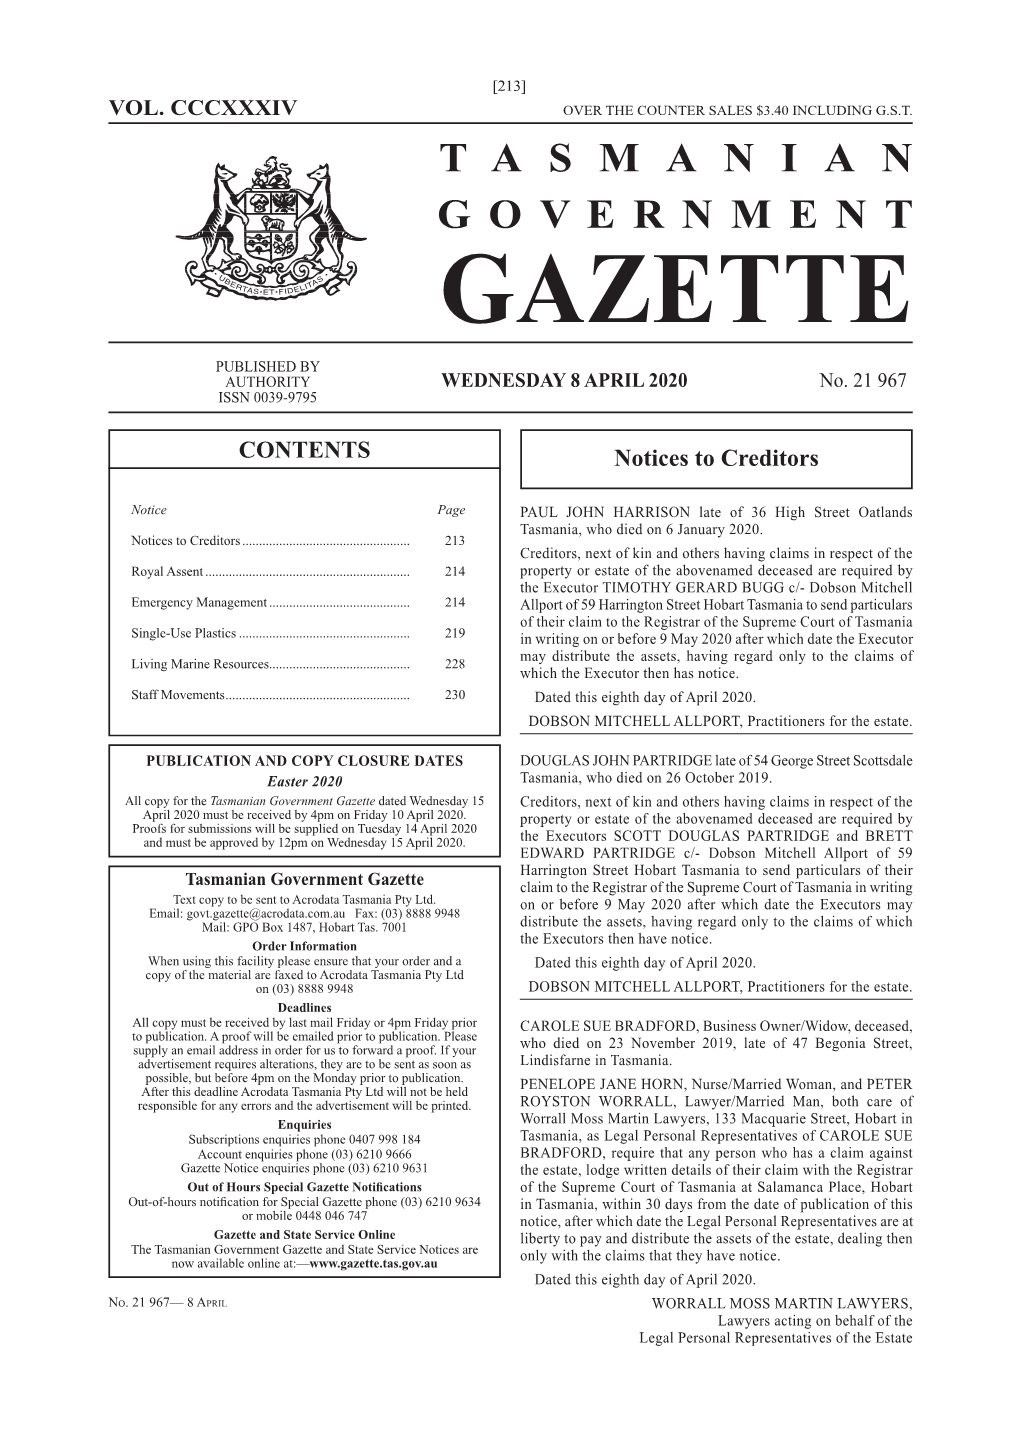 Gazette 21967